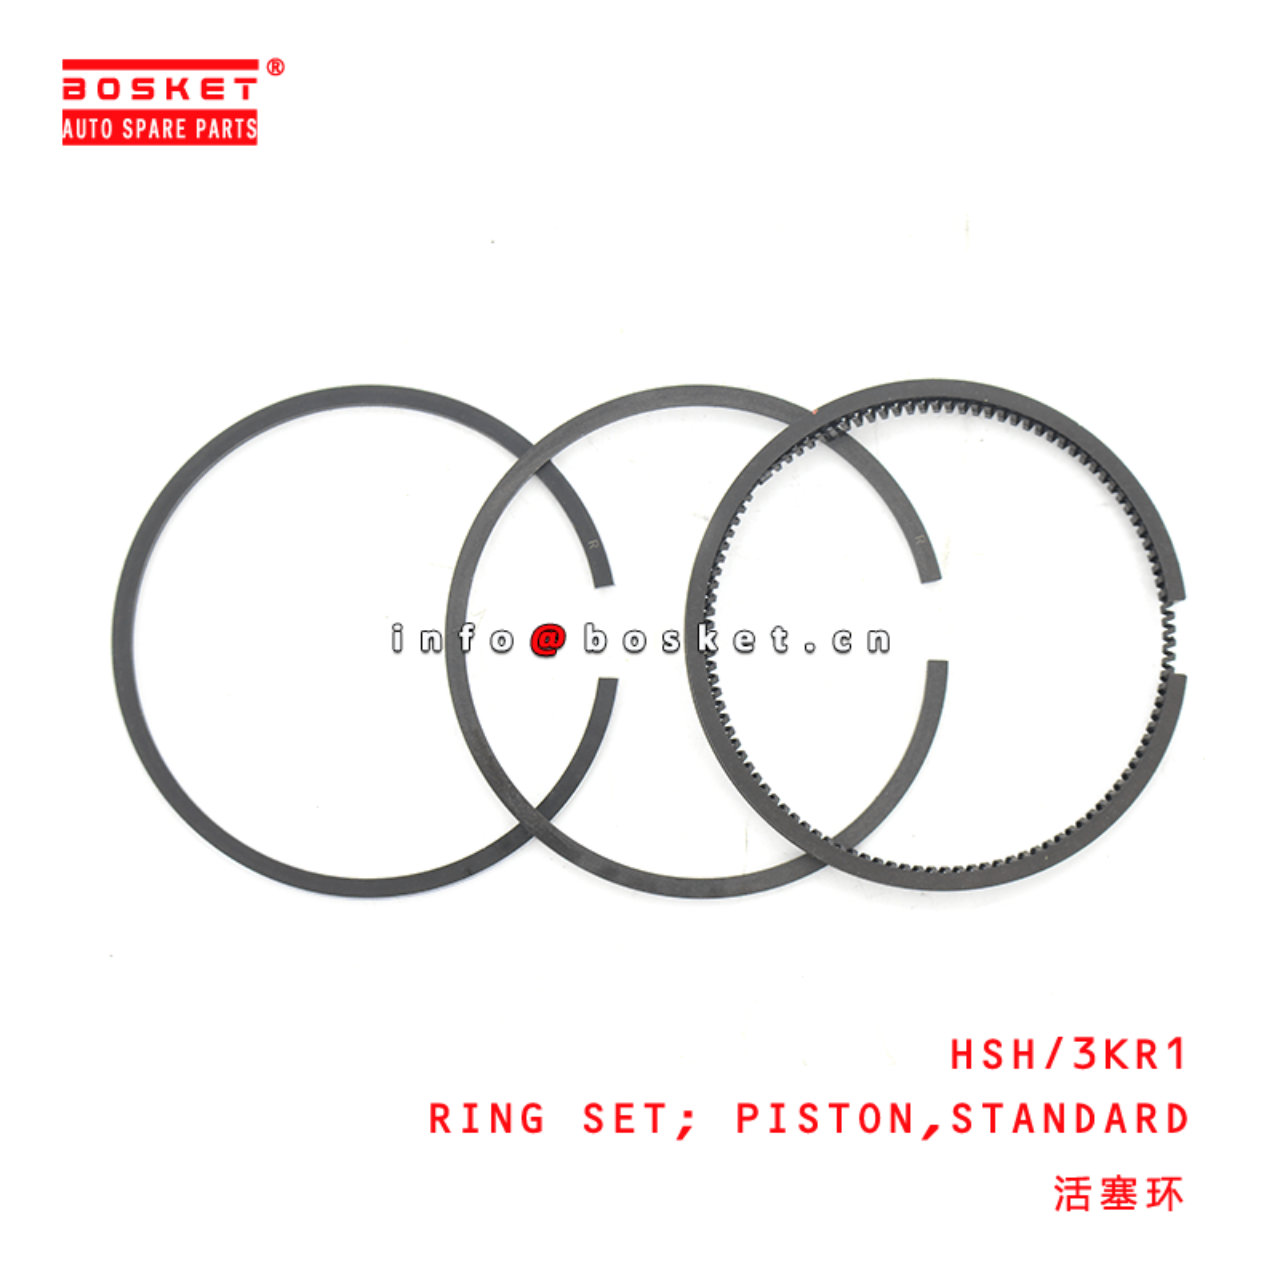 HSH/3KR1 Standard Piston Ring Set Suitable for ISUZU 3KR1 